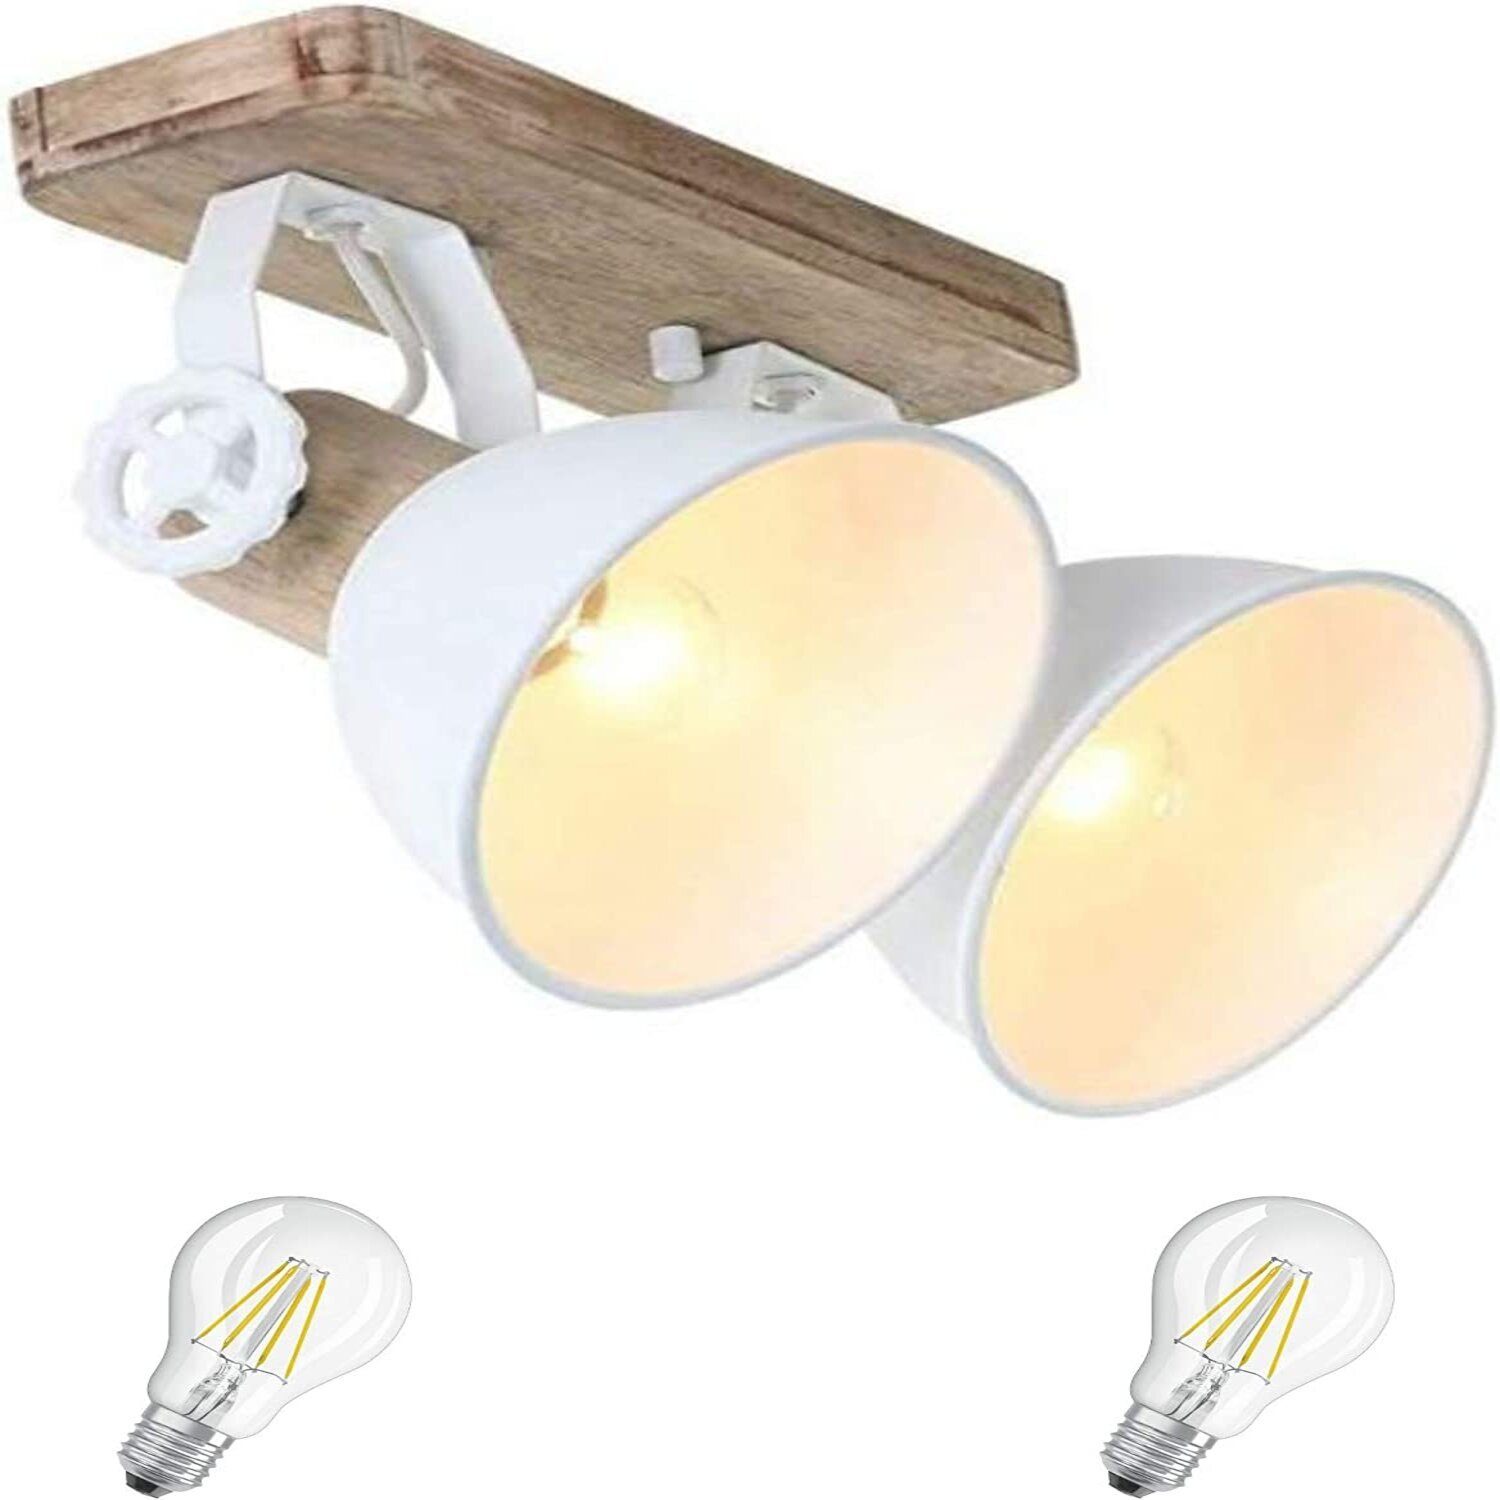 Lichthandel Hoch LED Deckenleuchte moderne Deckenlampe Industrie Vintage Retro Holz Metall incl. 7W LED, LED wechselbar, Warmweiß 7969Weiß